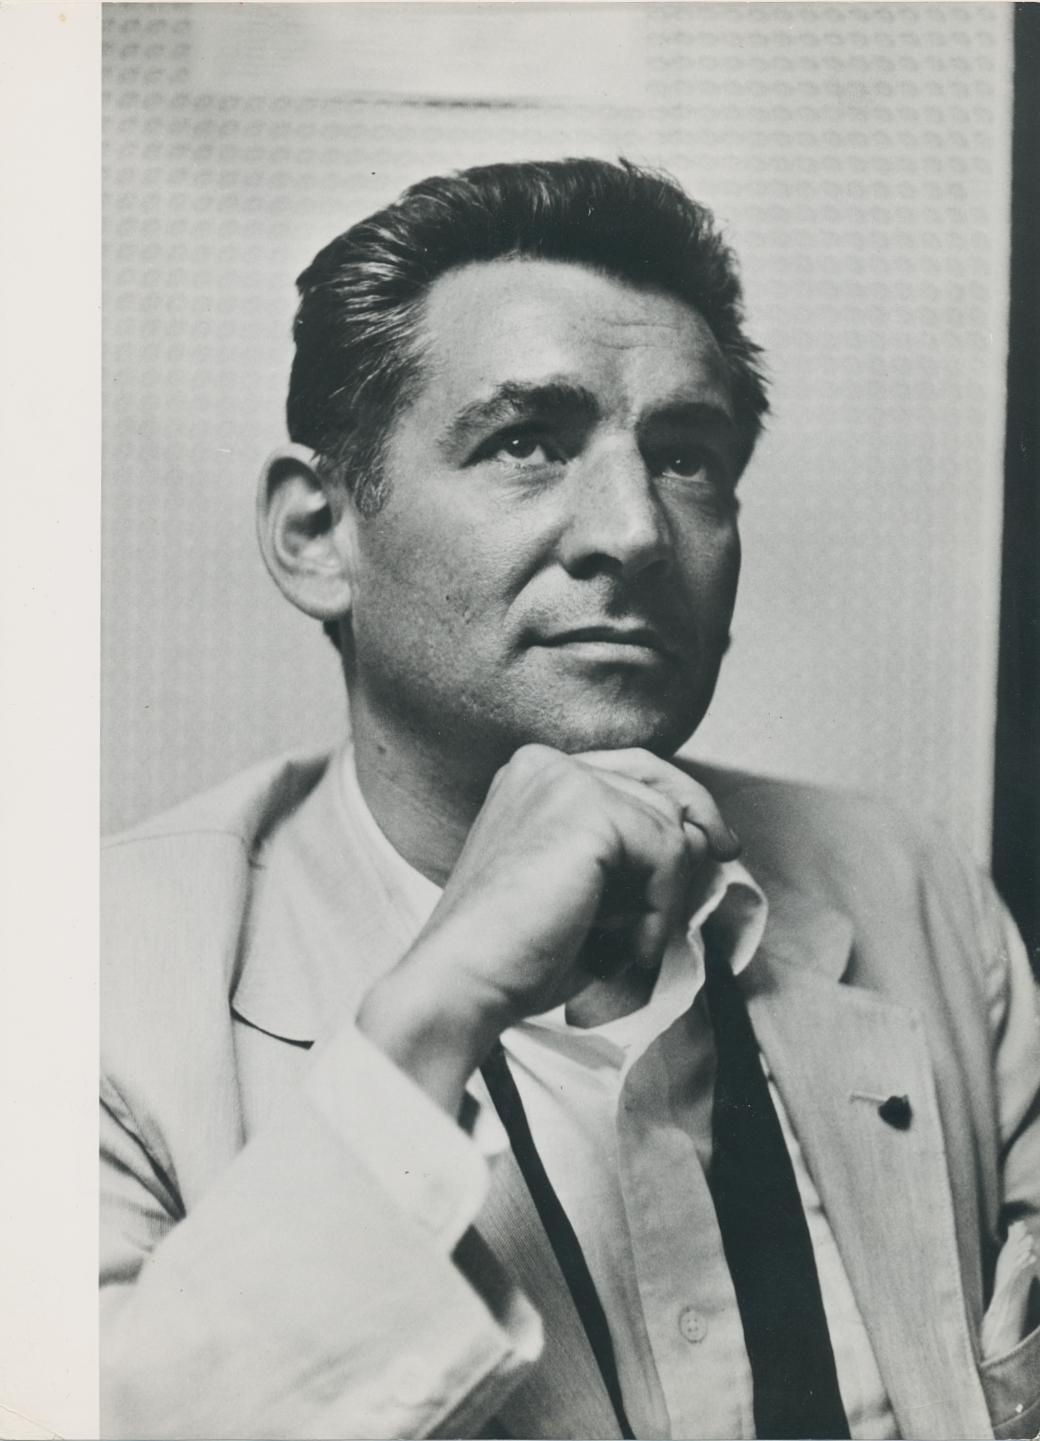 Unknown Black and White Photograph – Leonard Bernstein, ca. 1960